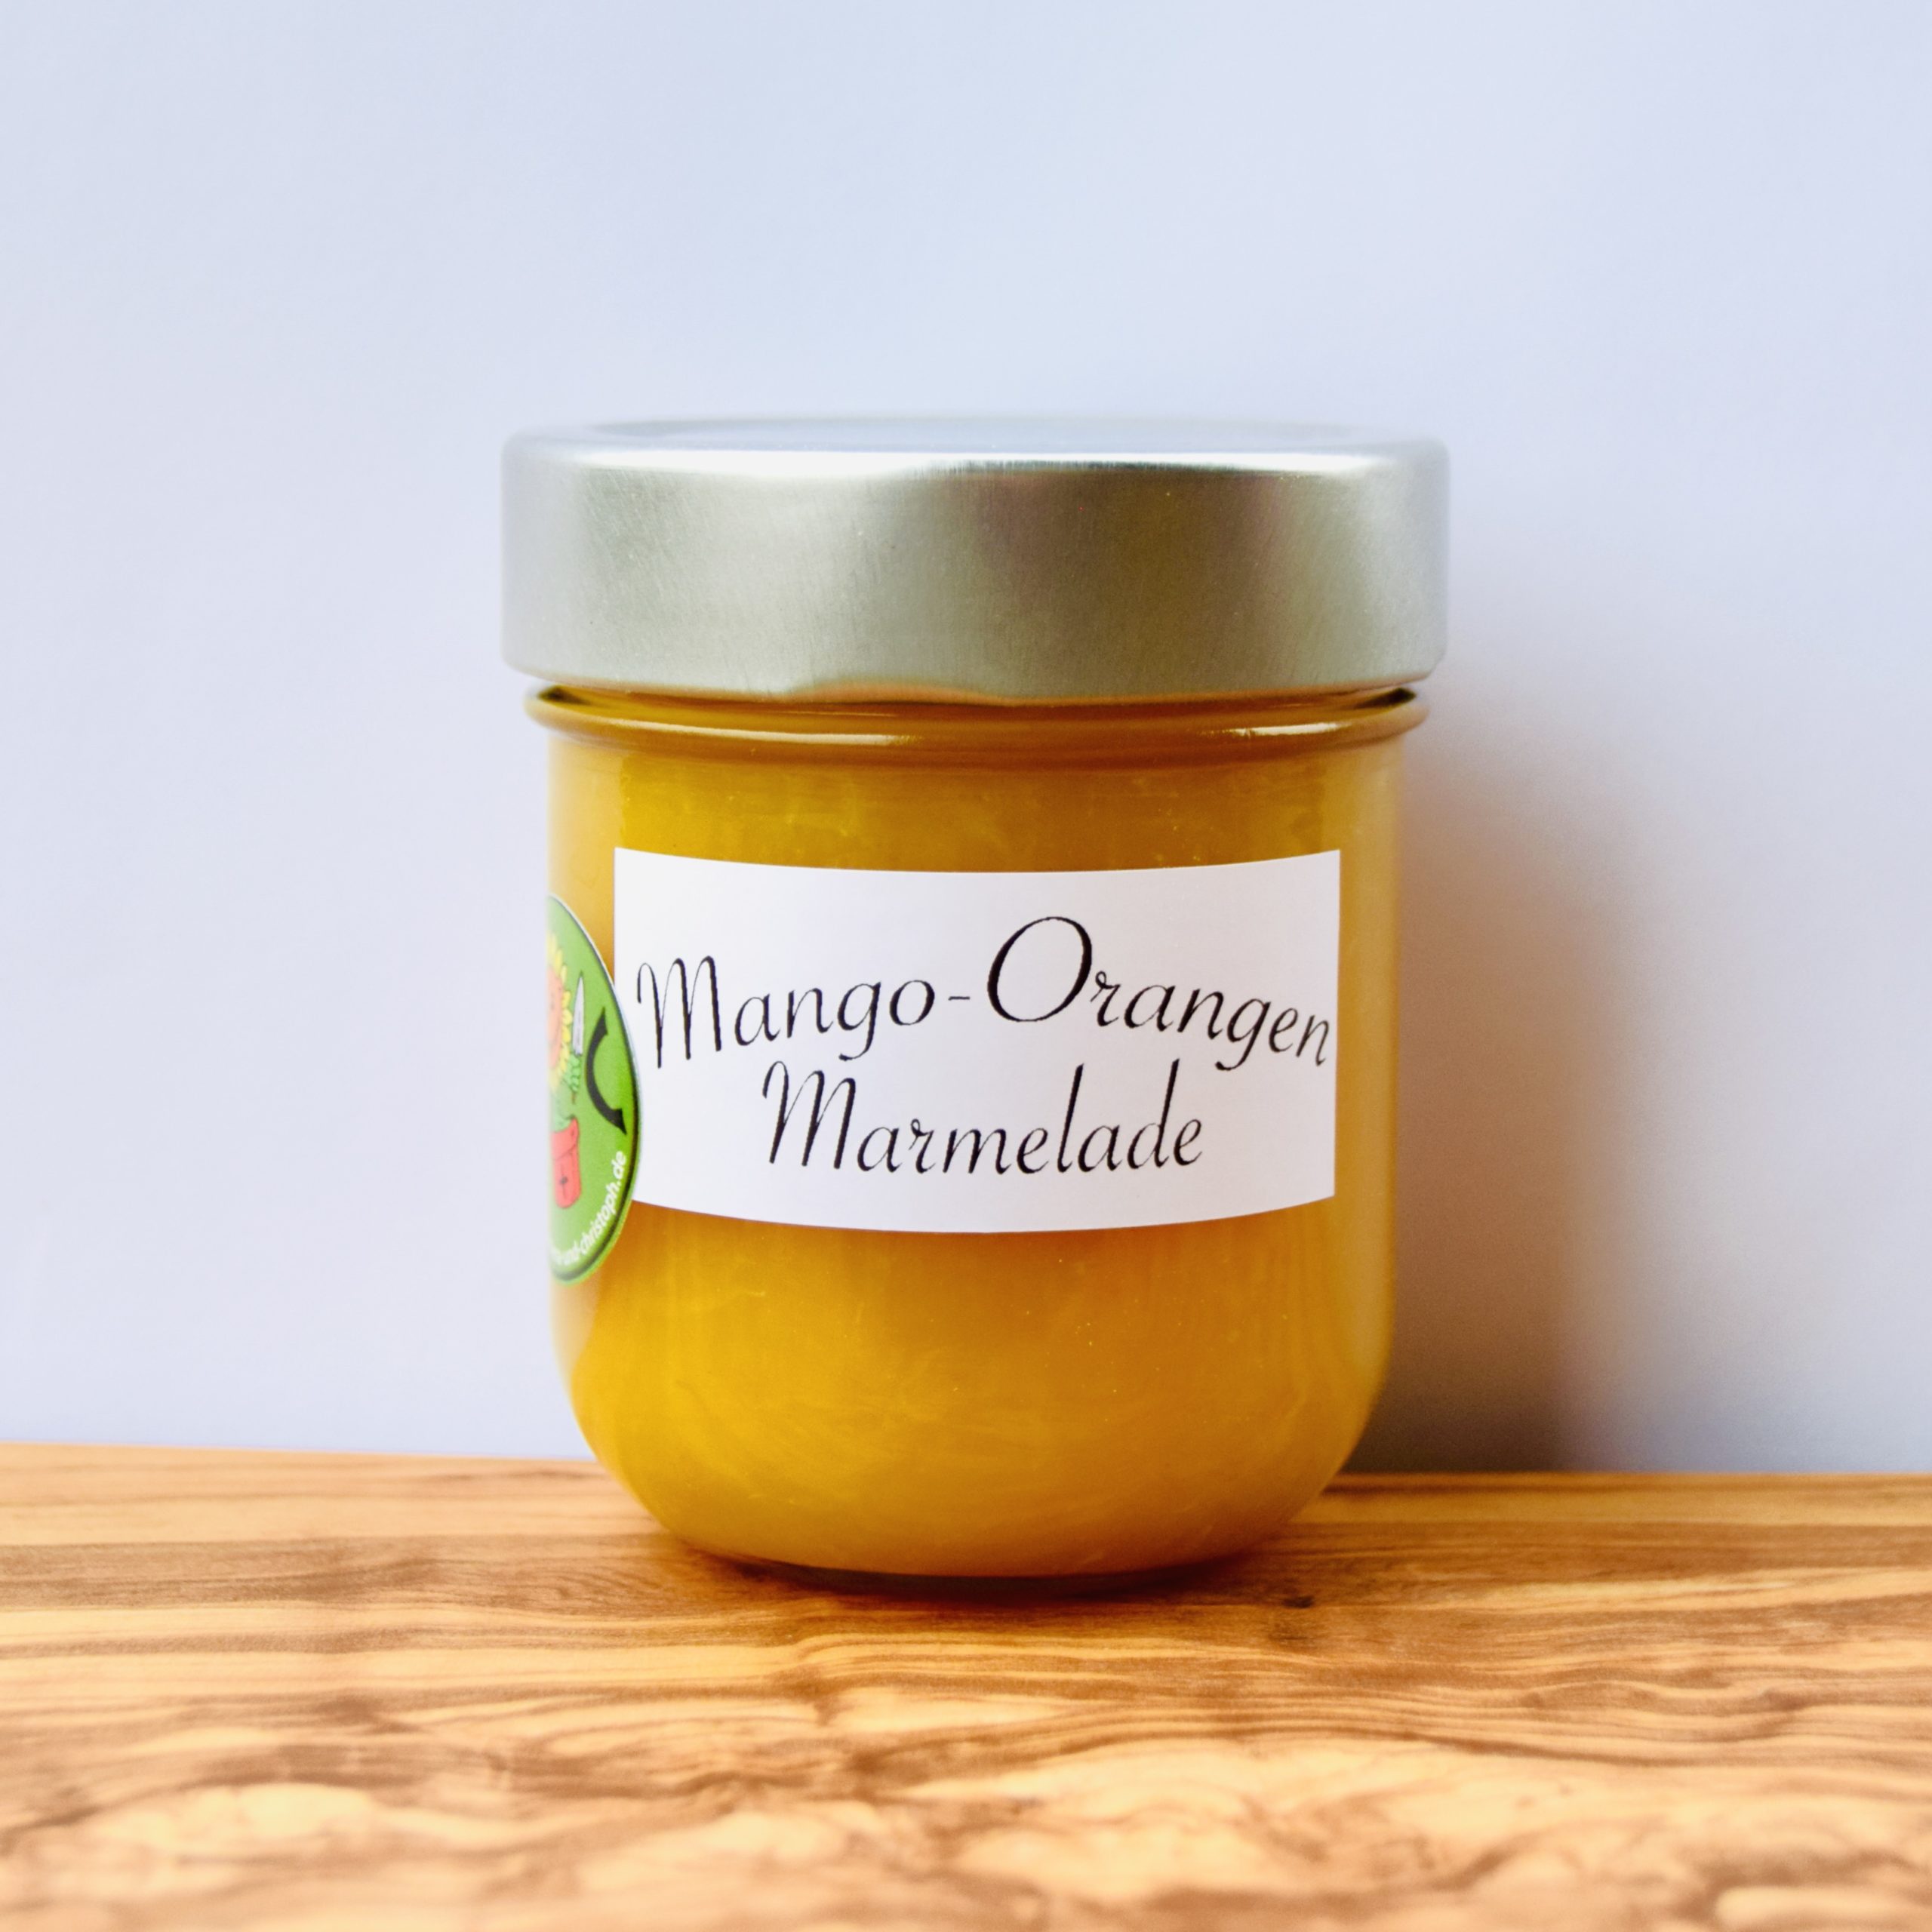 Mango Orangen Marmelade Image